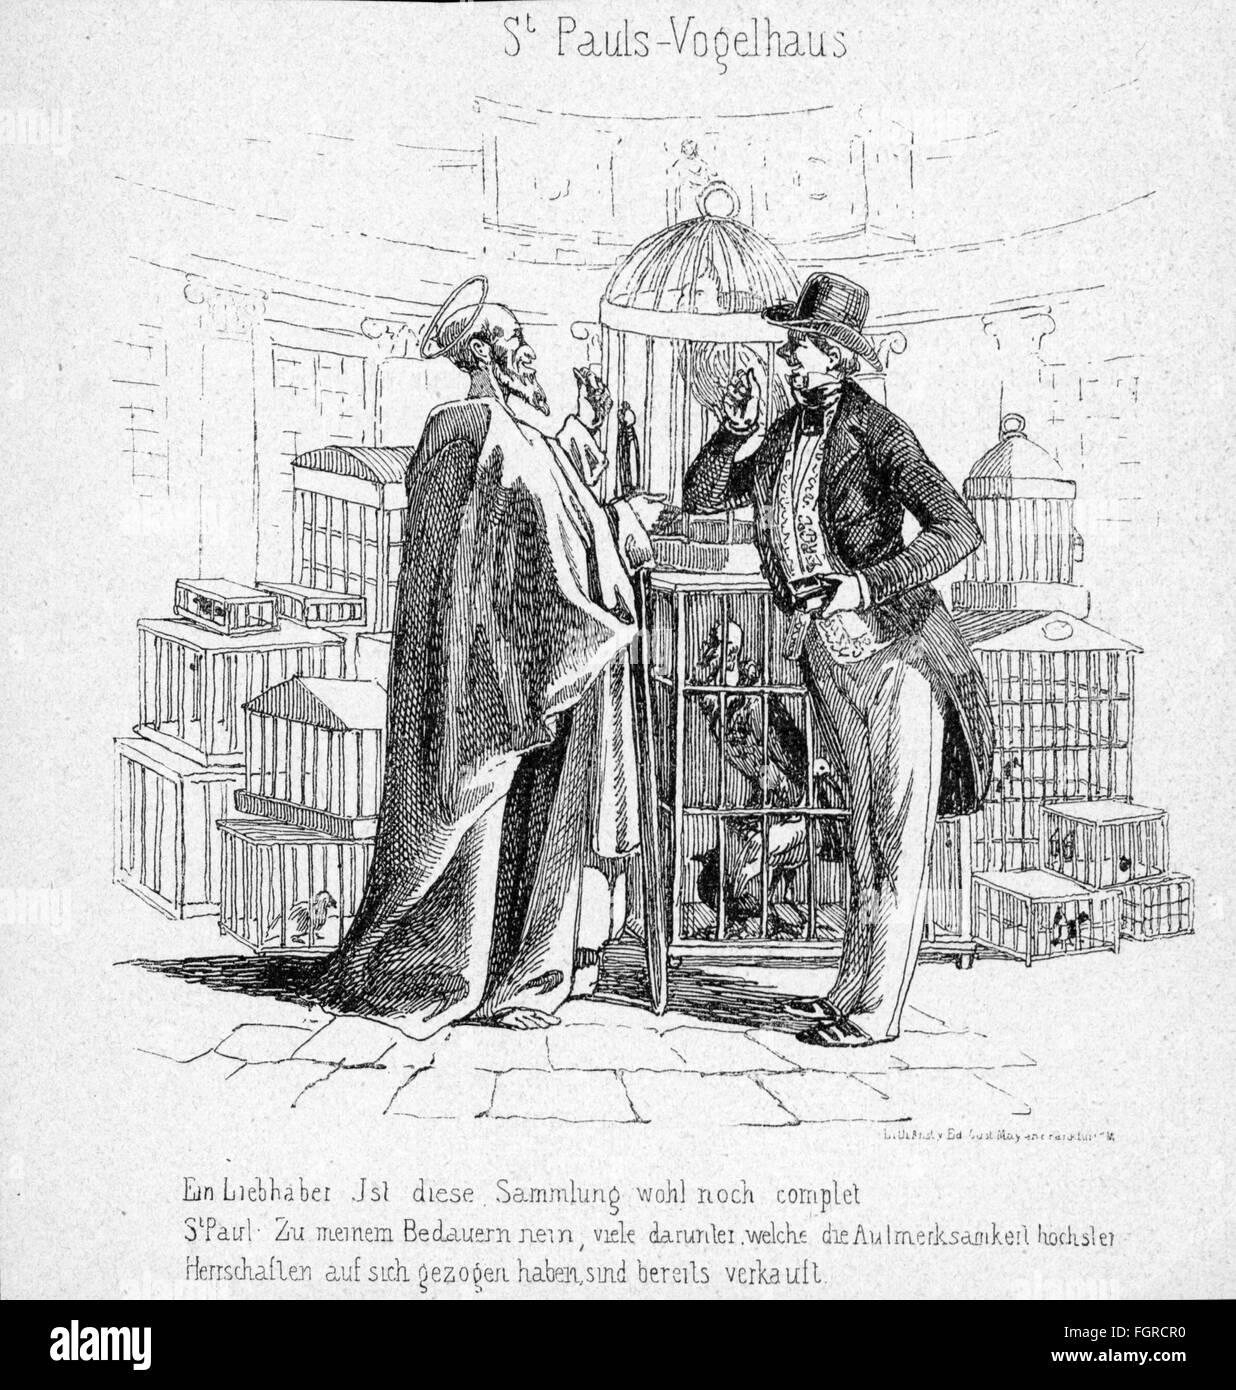 Révolution 1848 - 1849, Allemagne, caricature sur l'Assemblée nationale, 'Saint Paul's Aviary', gravure contemporaine en bois, droits additionnels-Clearences-non disponible Banque D'Images